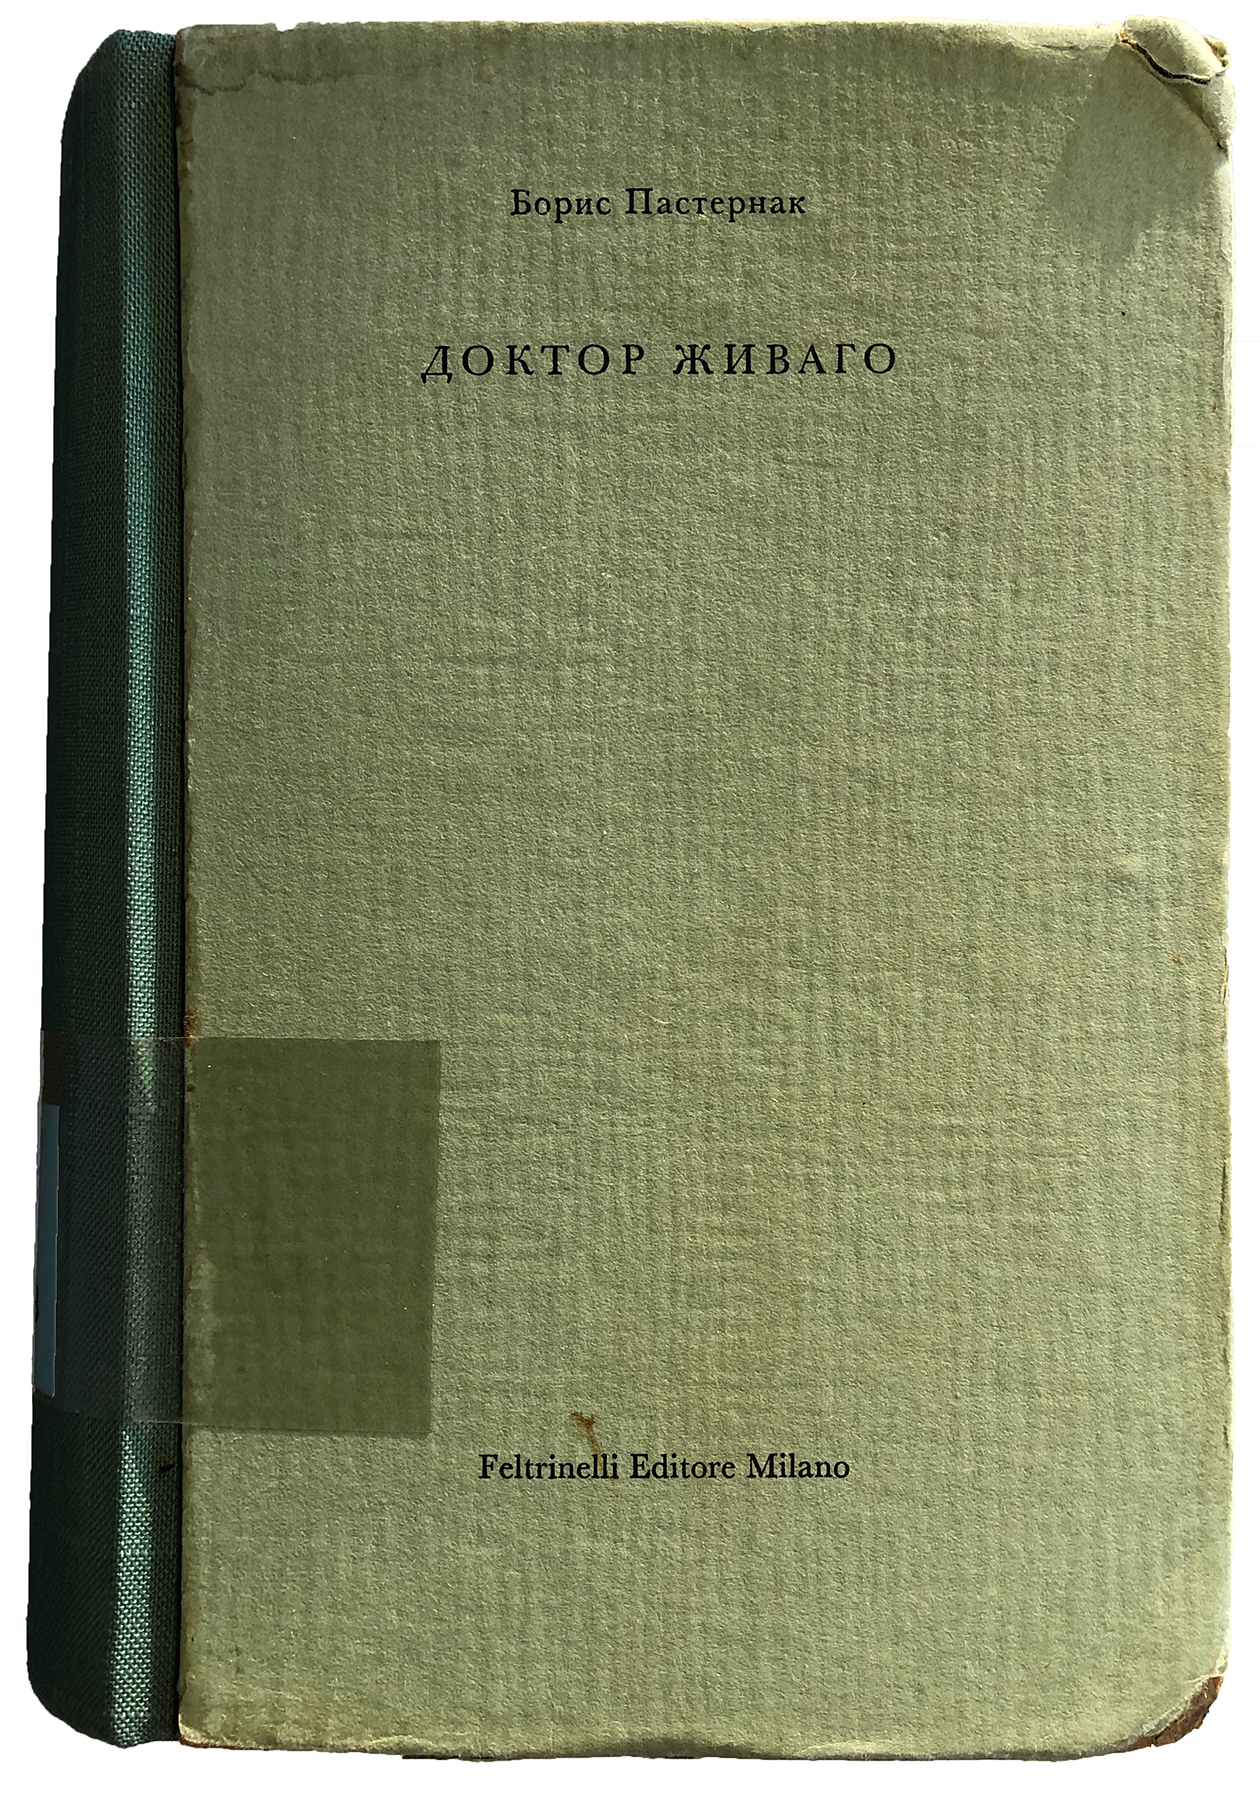 «Doktor Živago» von Boris Pasternak, Mailand, um 1957; Signatur RBC 3598. (Bild: ZB Zürich)